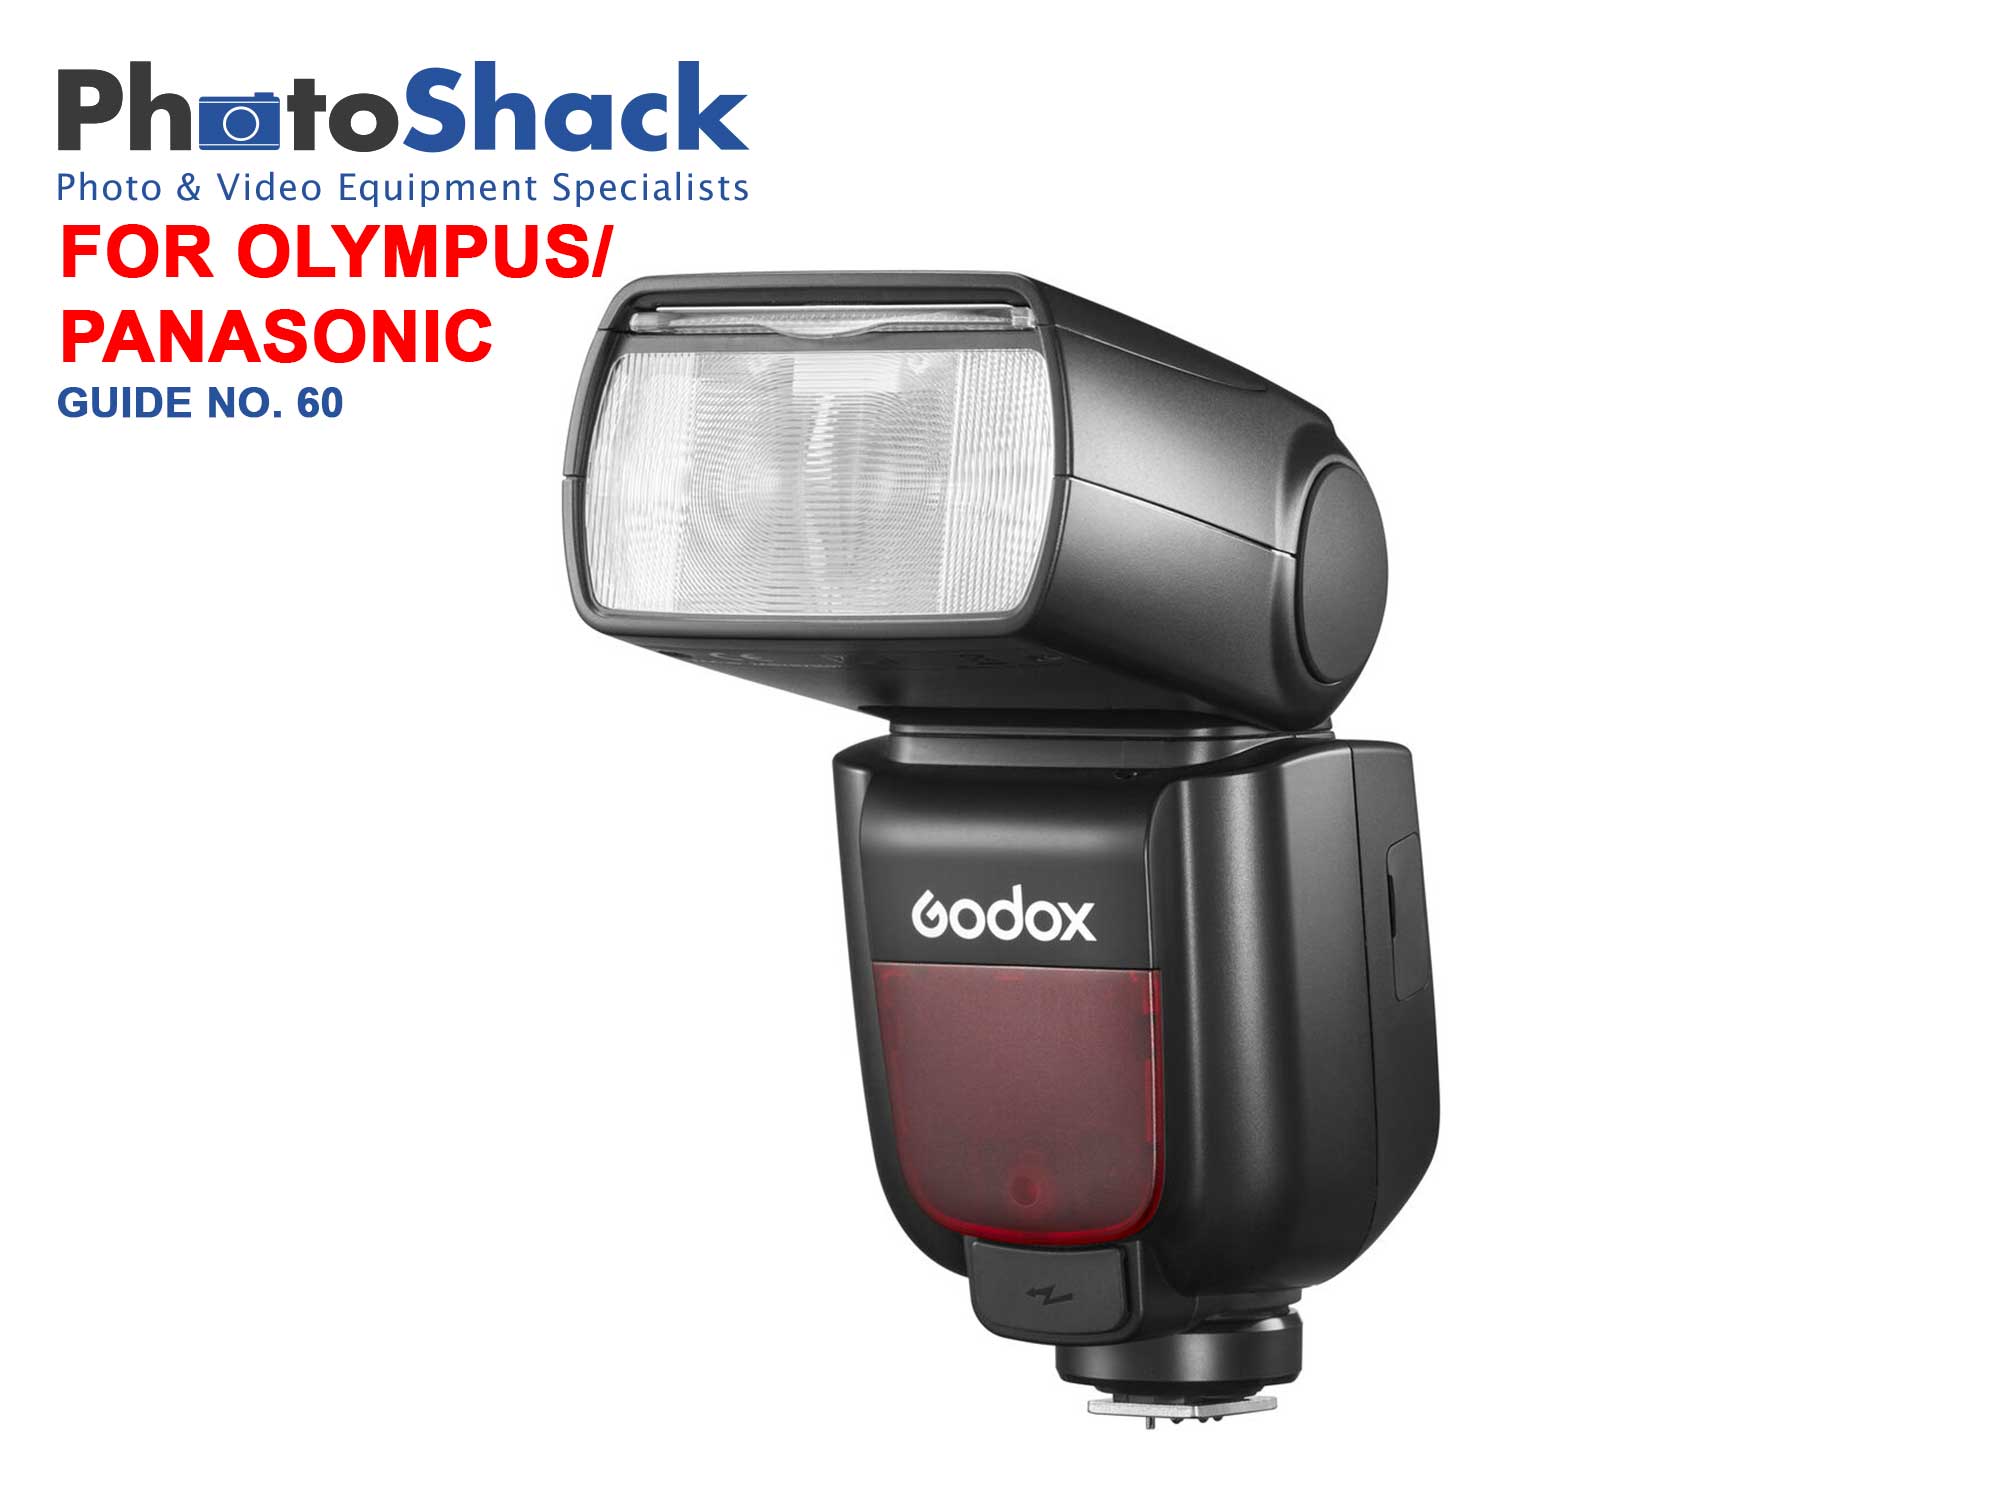 Godox TT685II O TTL Camera Flash for Olympus & Panasonic